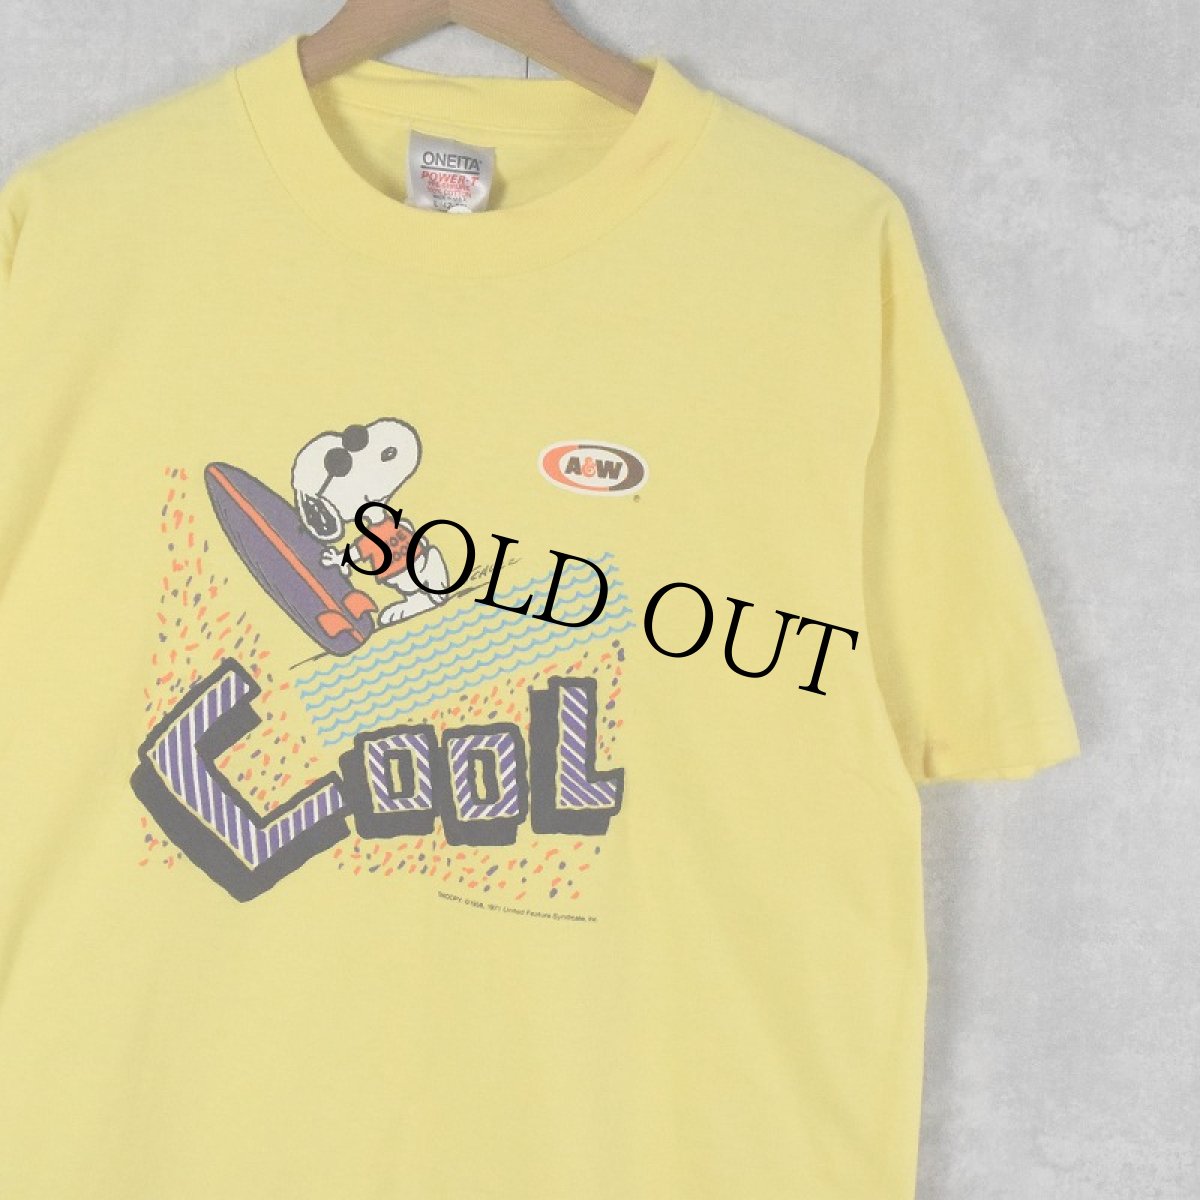 画像1: 90's SNOOPY USA製 "COOL" キャラクターTシャツ L (1)